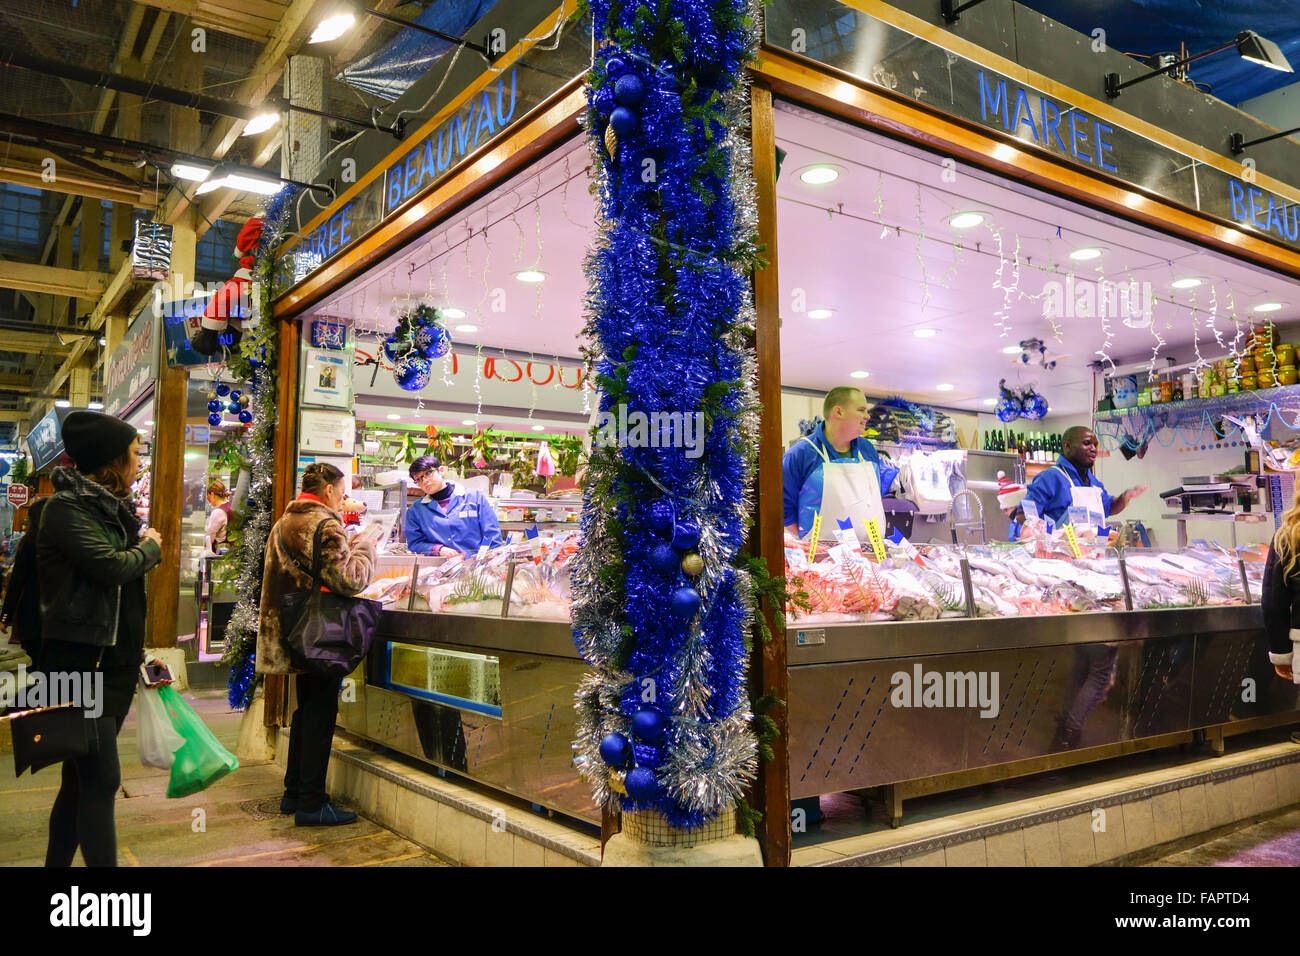 Stallo con frutti di mare al mercato coperto Marché Beauveau presso la piazza di Aligre. Parigi, Francia. Foto Stock